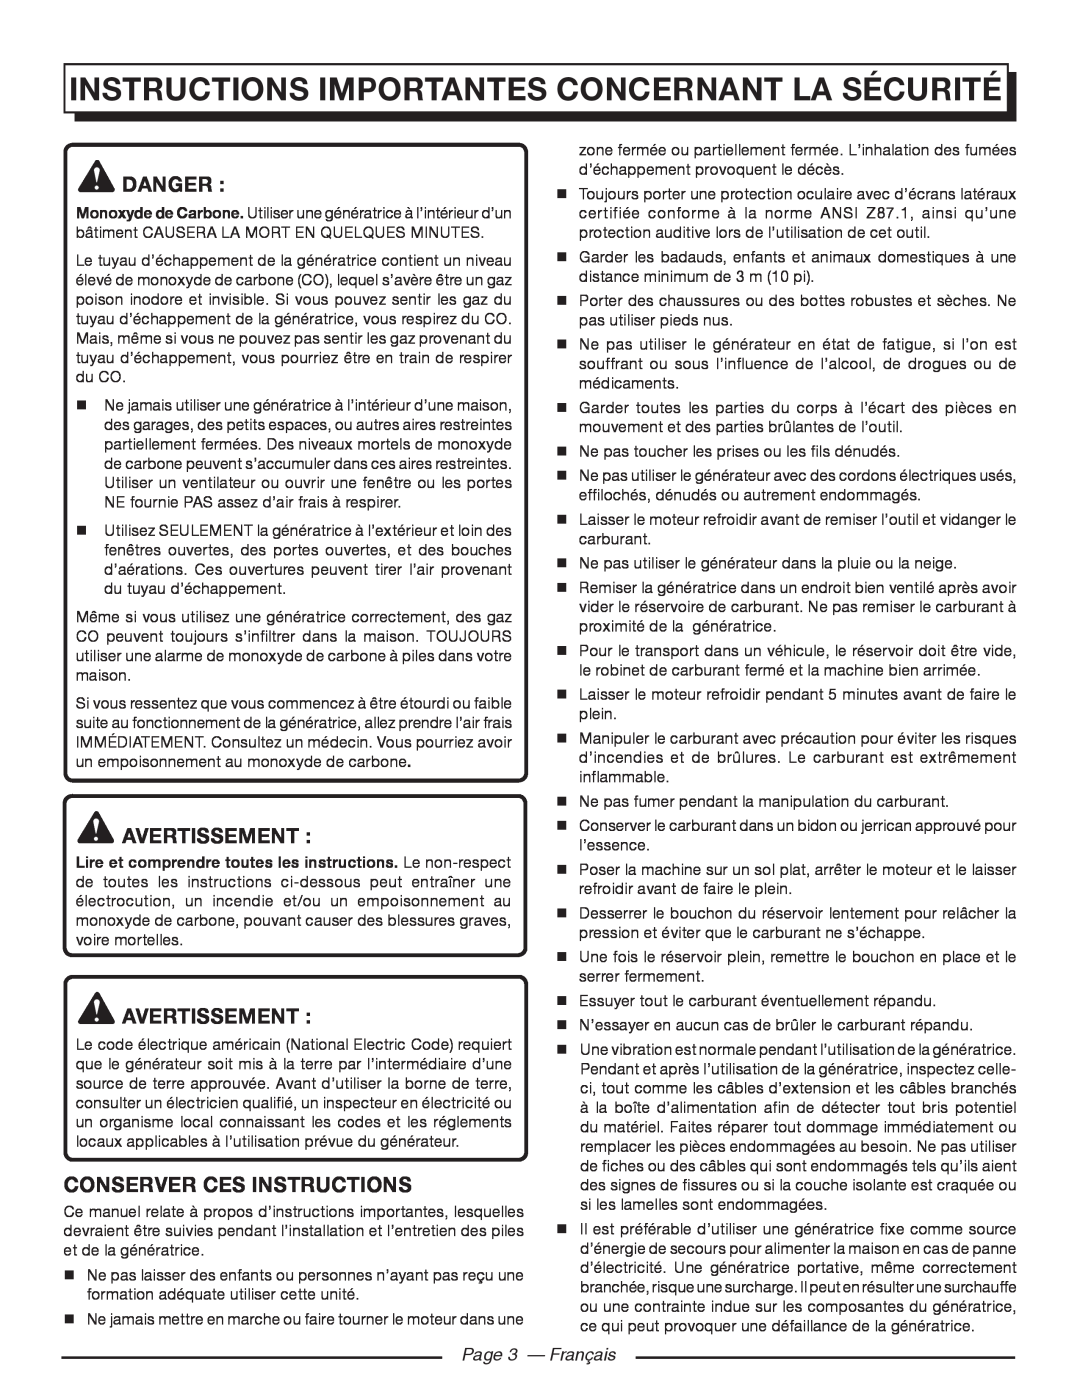 Homelite HG5000 Instructions Importantes Concernant La Sécurité, Danger, Avertissement, Conserver Ces Instructions 